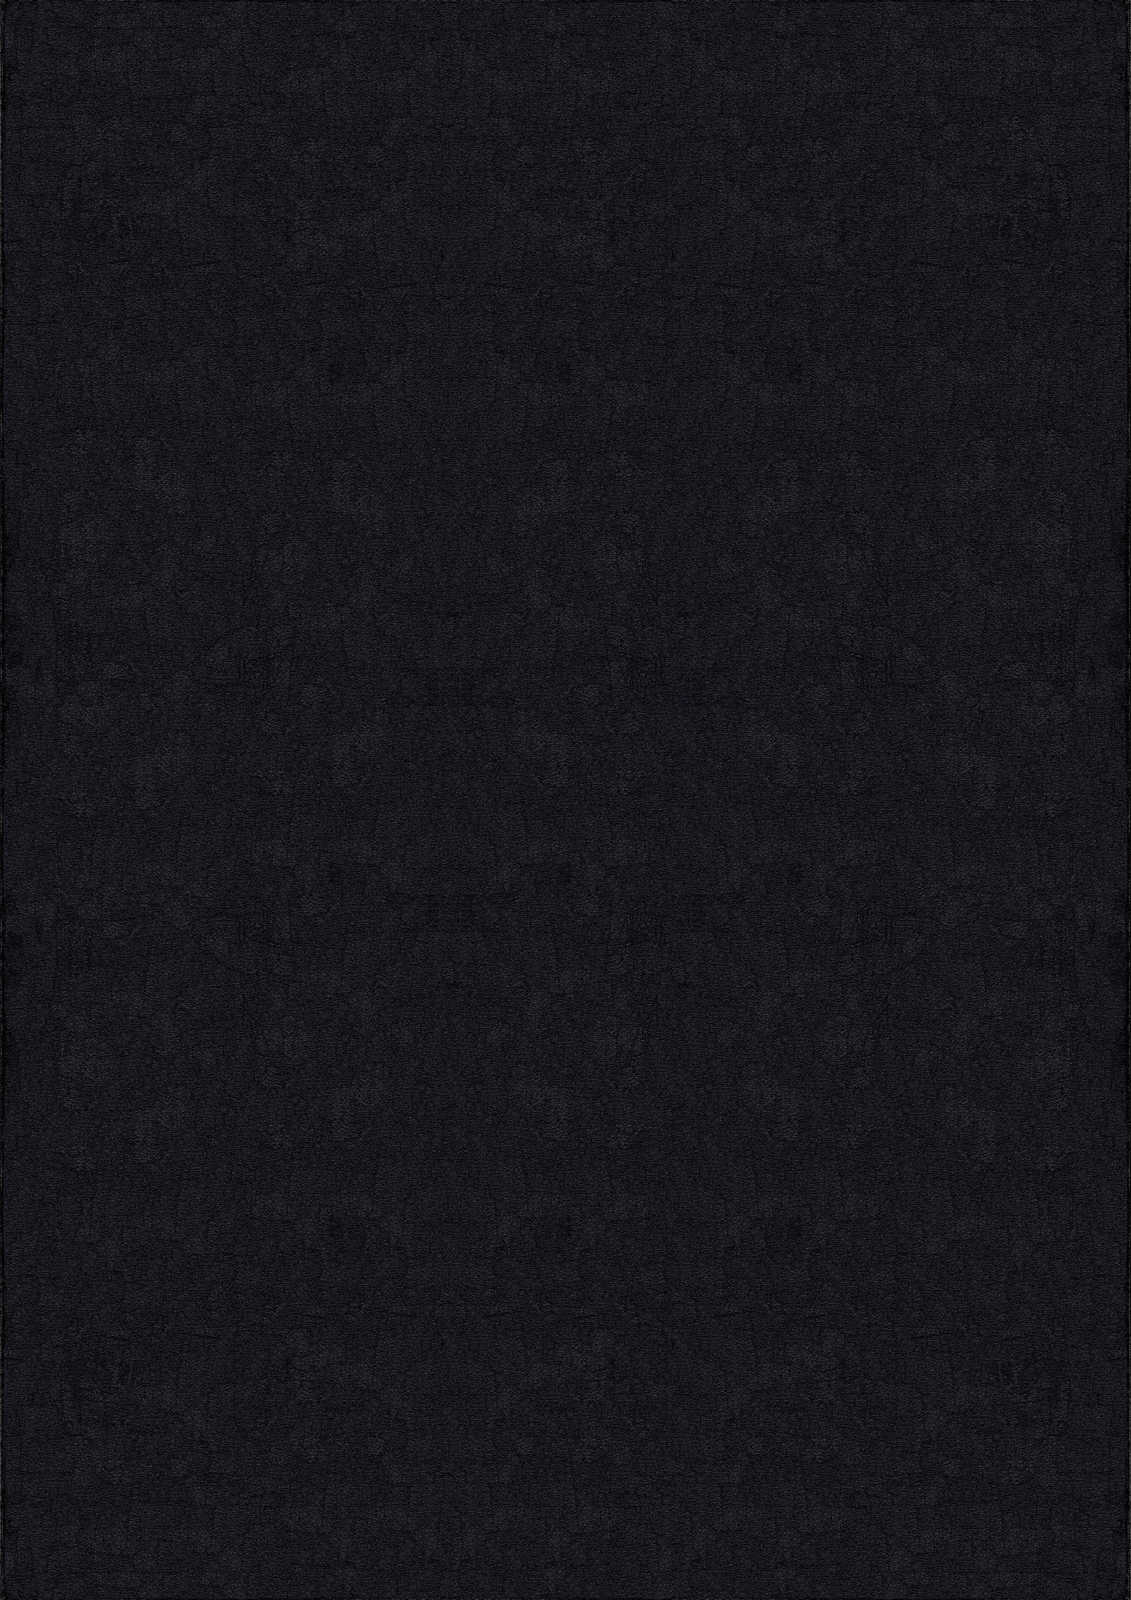             Tapis velouté à poils longs noir - 200 x 140 cm
        